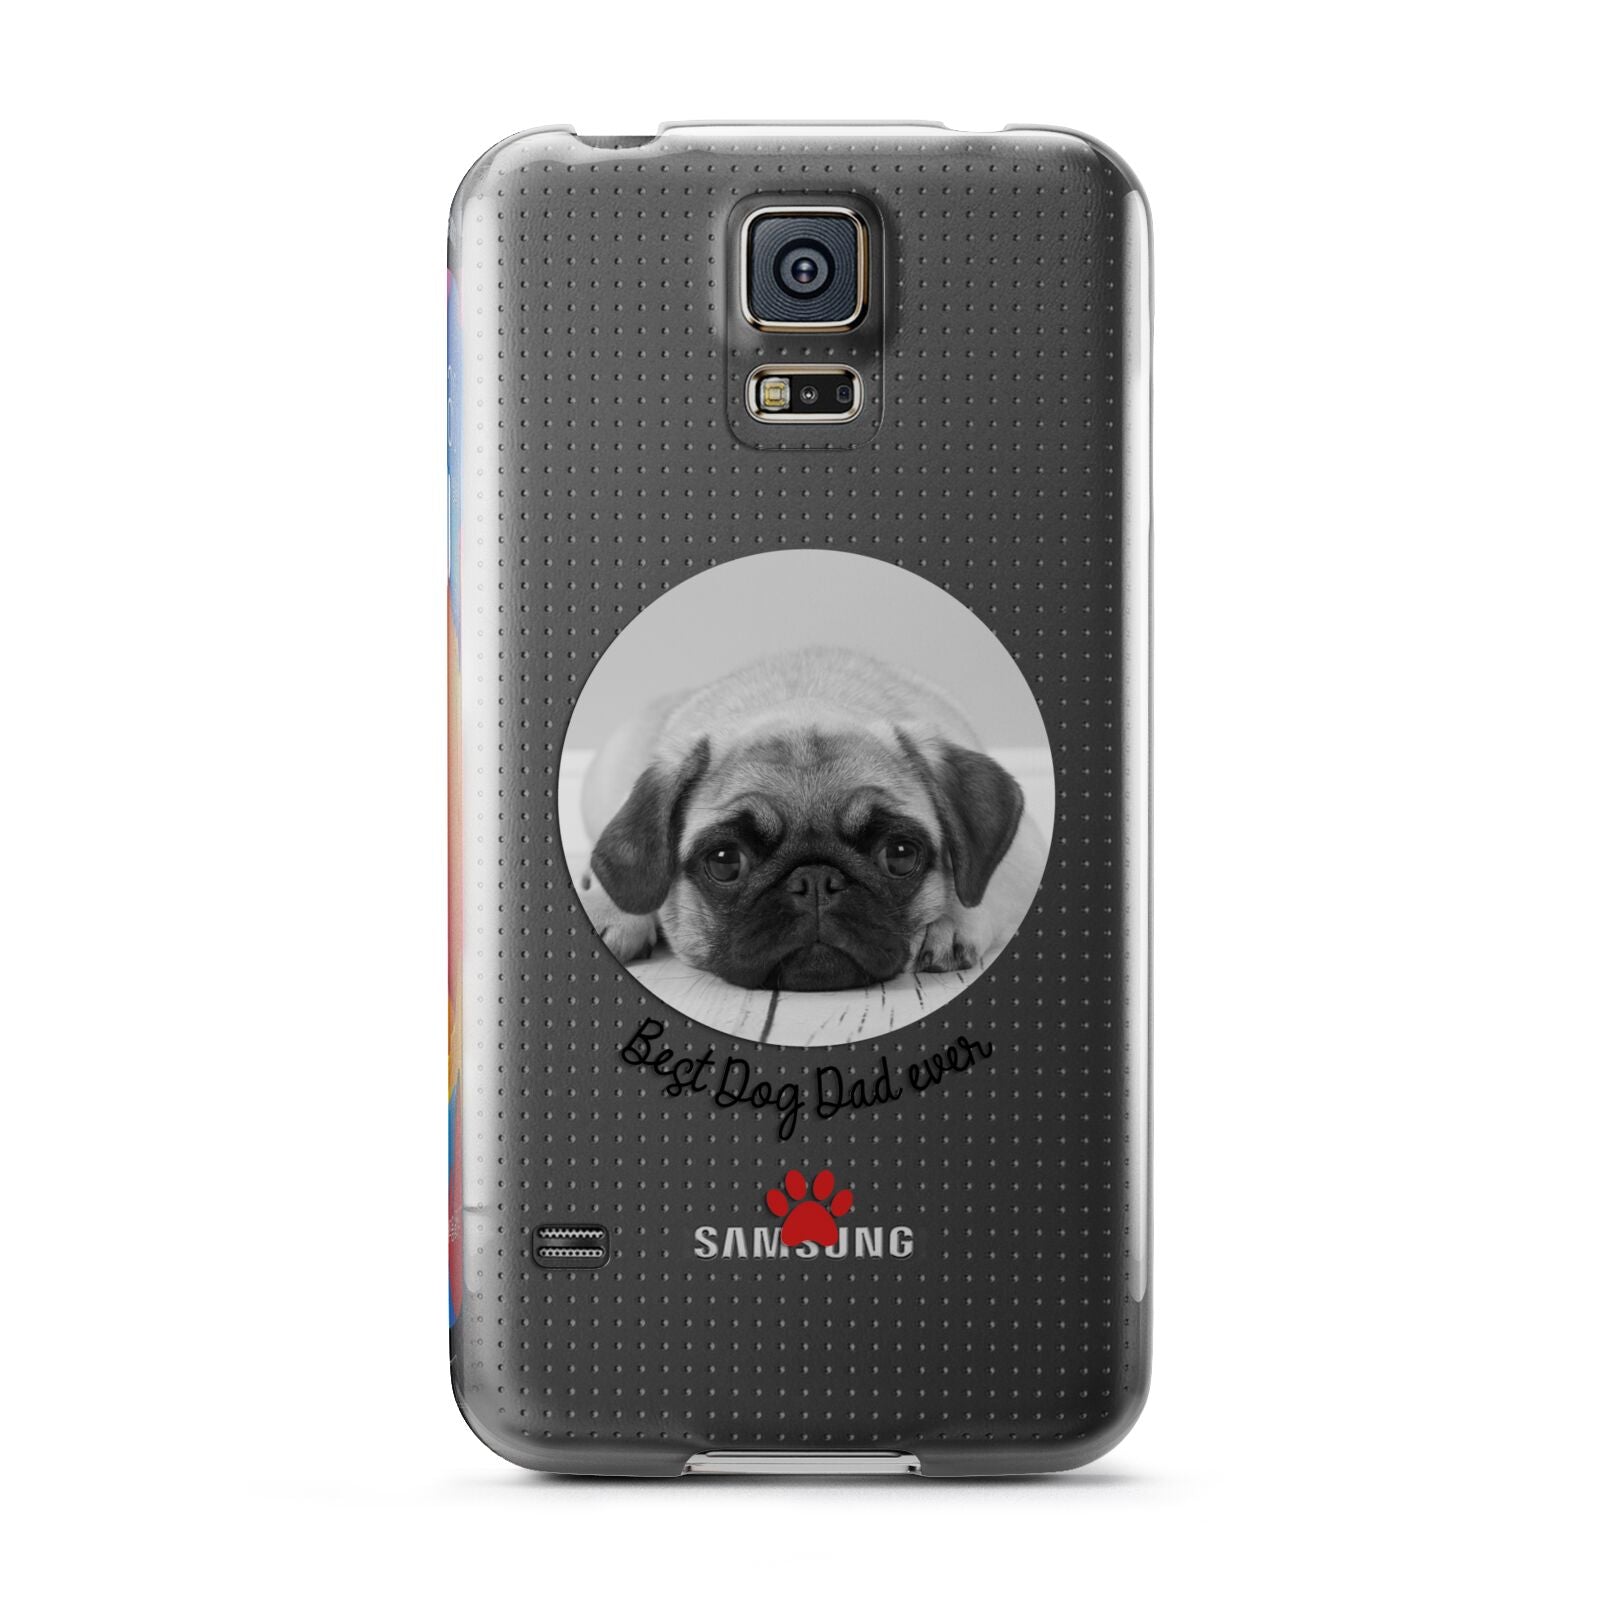 Best Dog Dad Ever Photo Upload Samsung Galaxy S5 Case